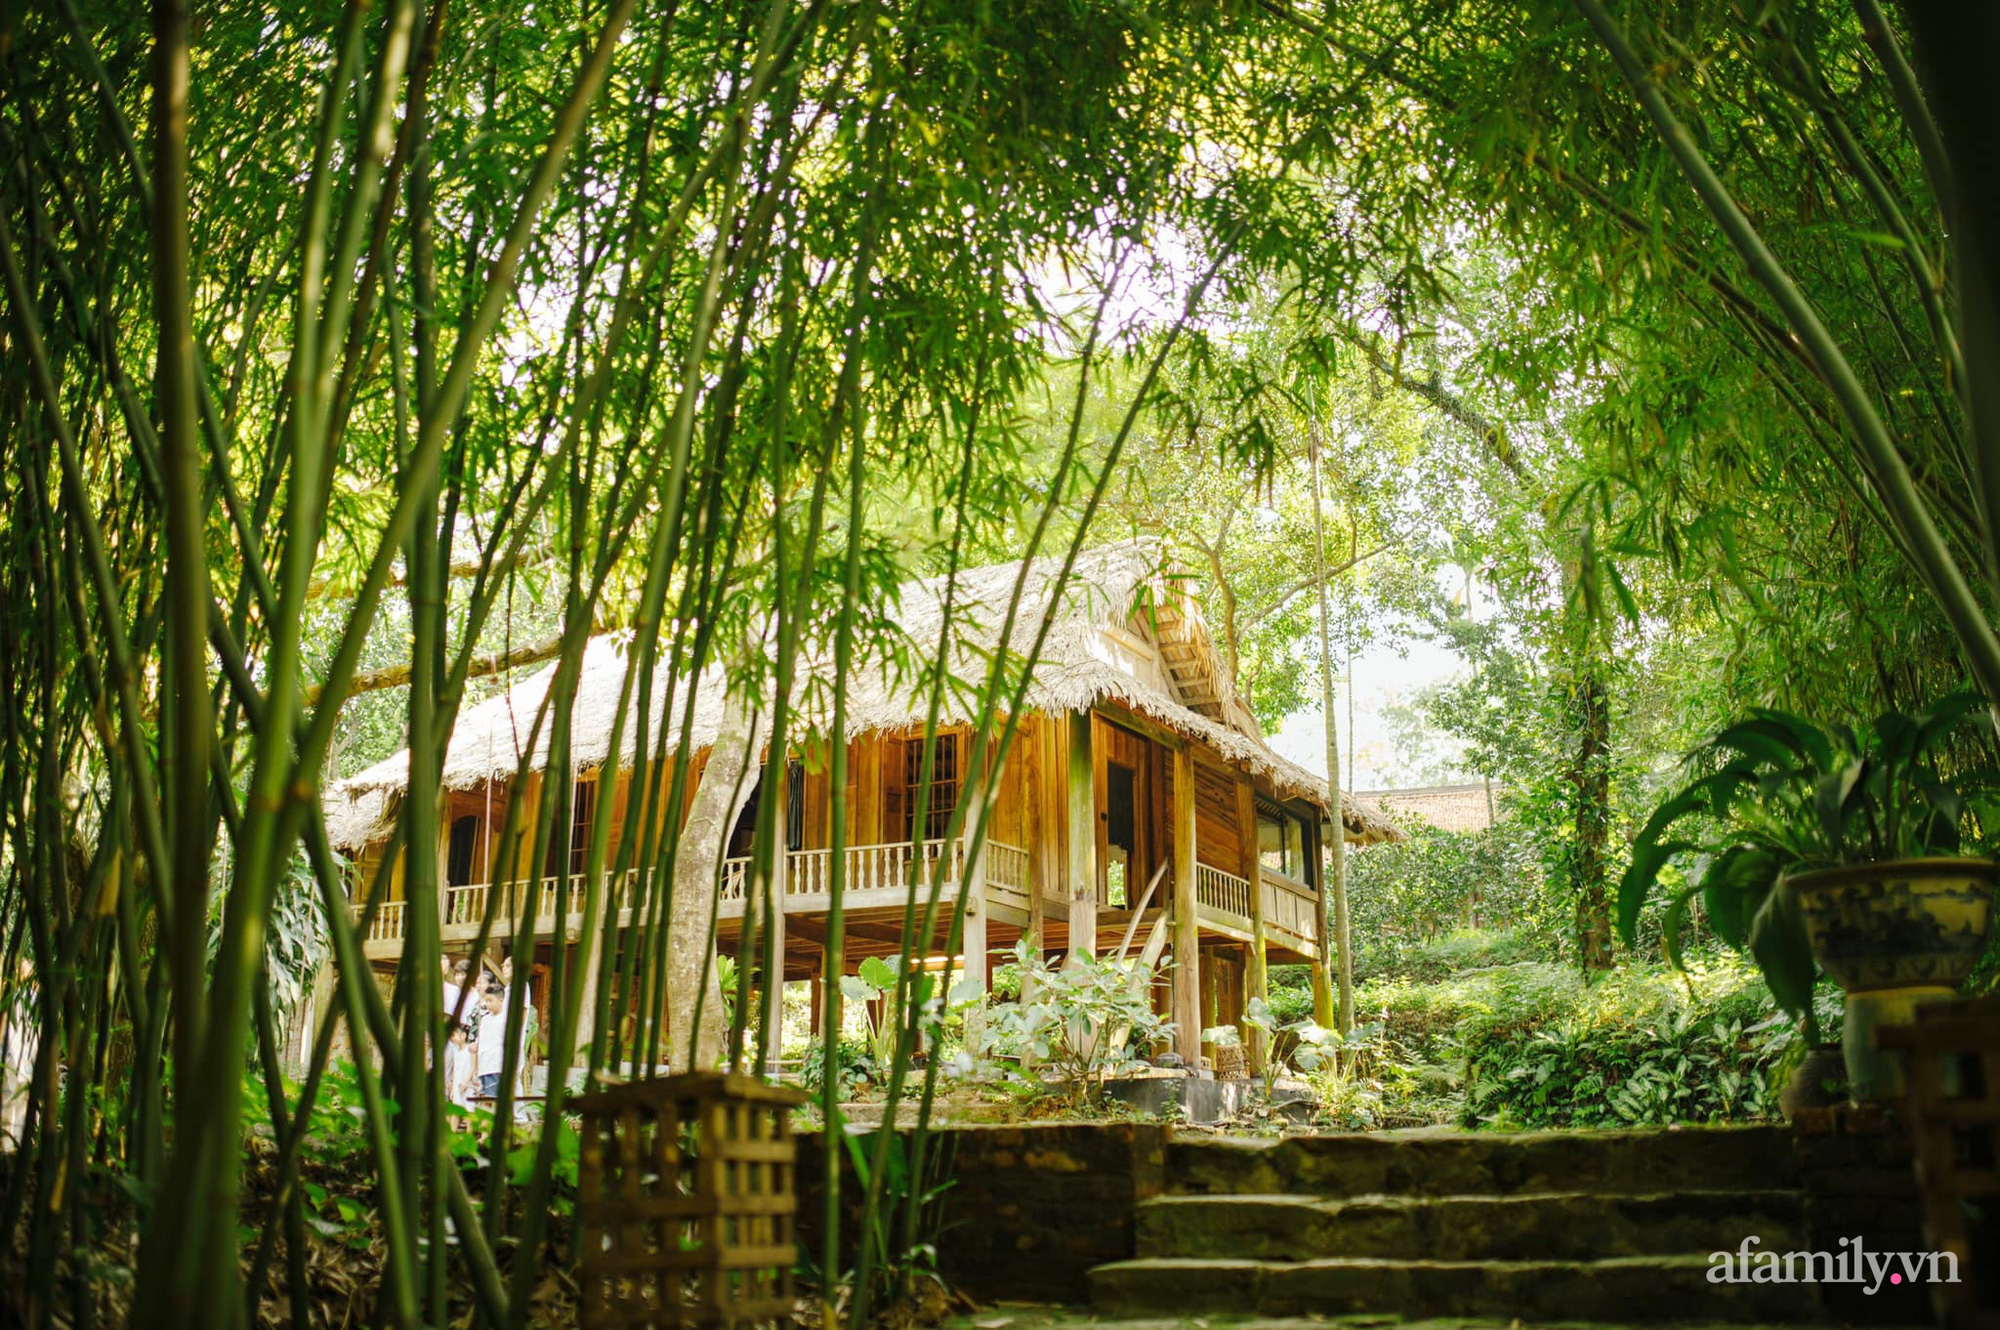 Cuộc sống yên bình trong ngôi nhà nhỏ cùng khu vườn xanh mát bóng cây ở ngoại thành Hà Nội - Ảnh 1.